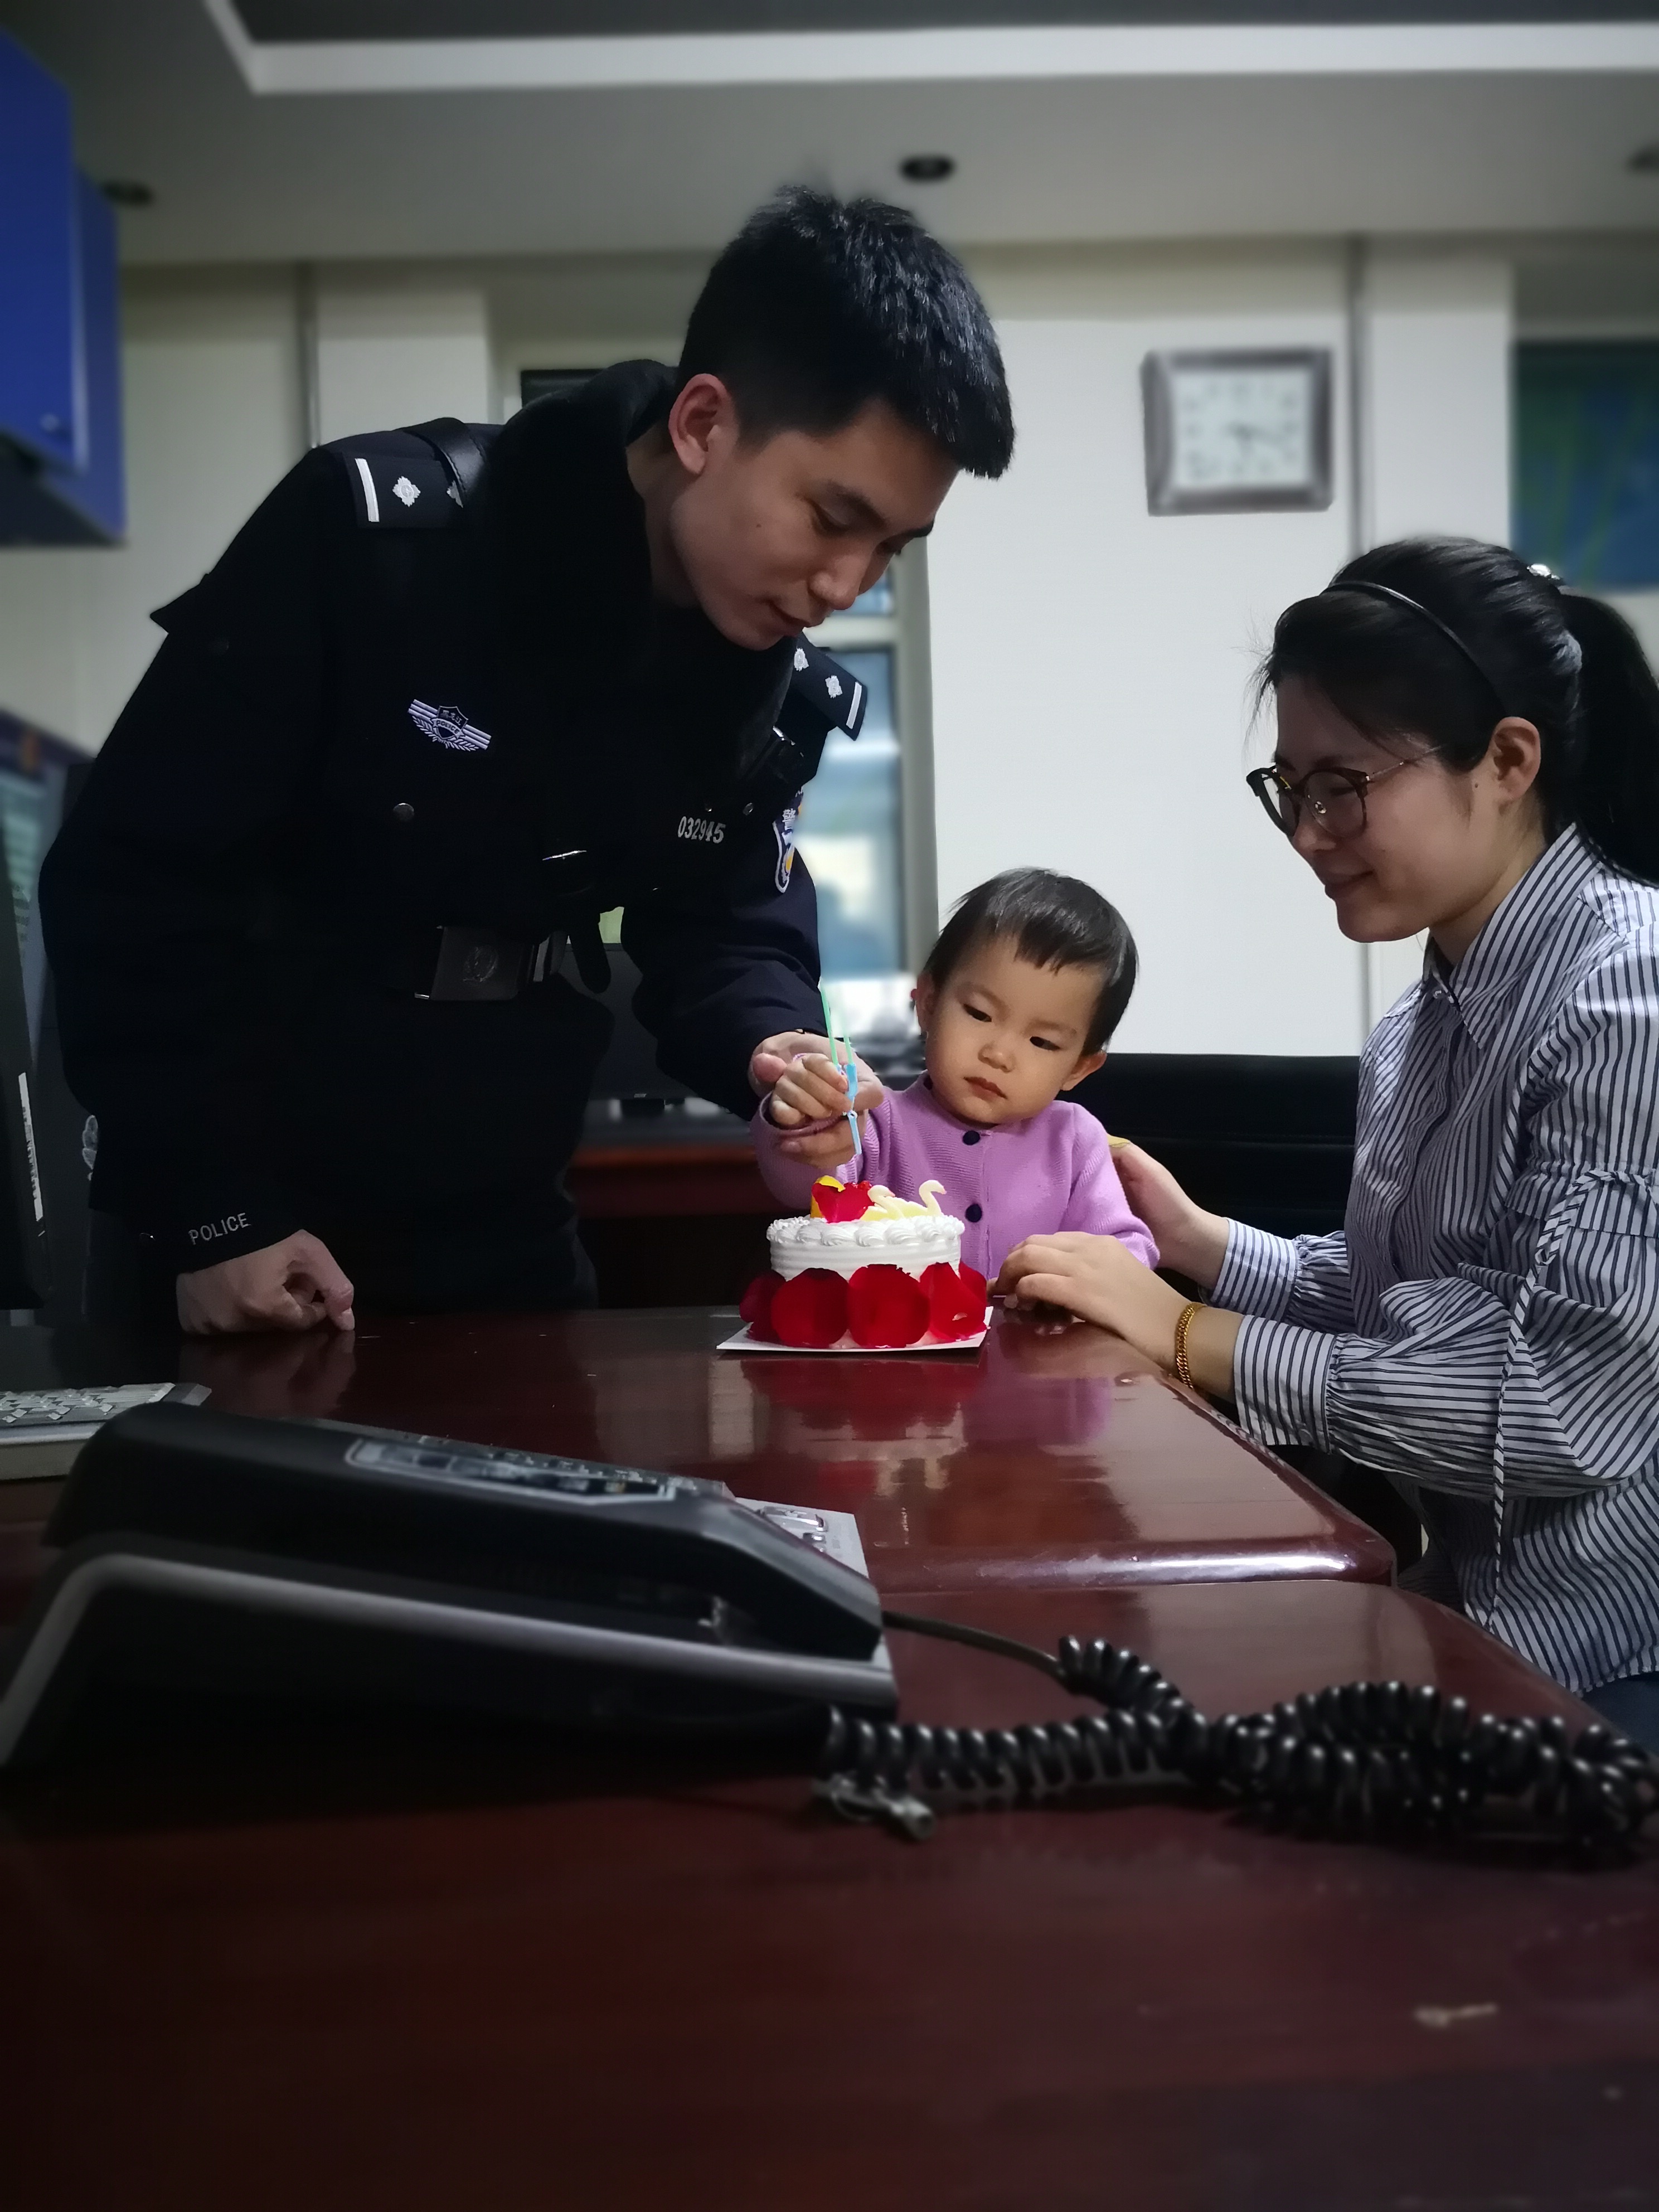 警察爸爸送给两岁女儿的生日礼物是一个抱抱